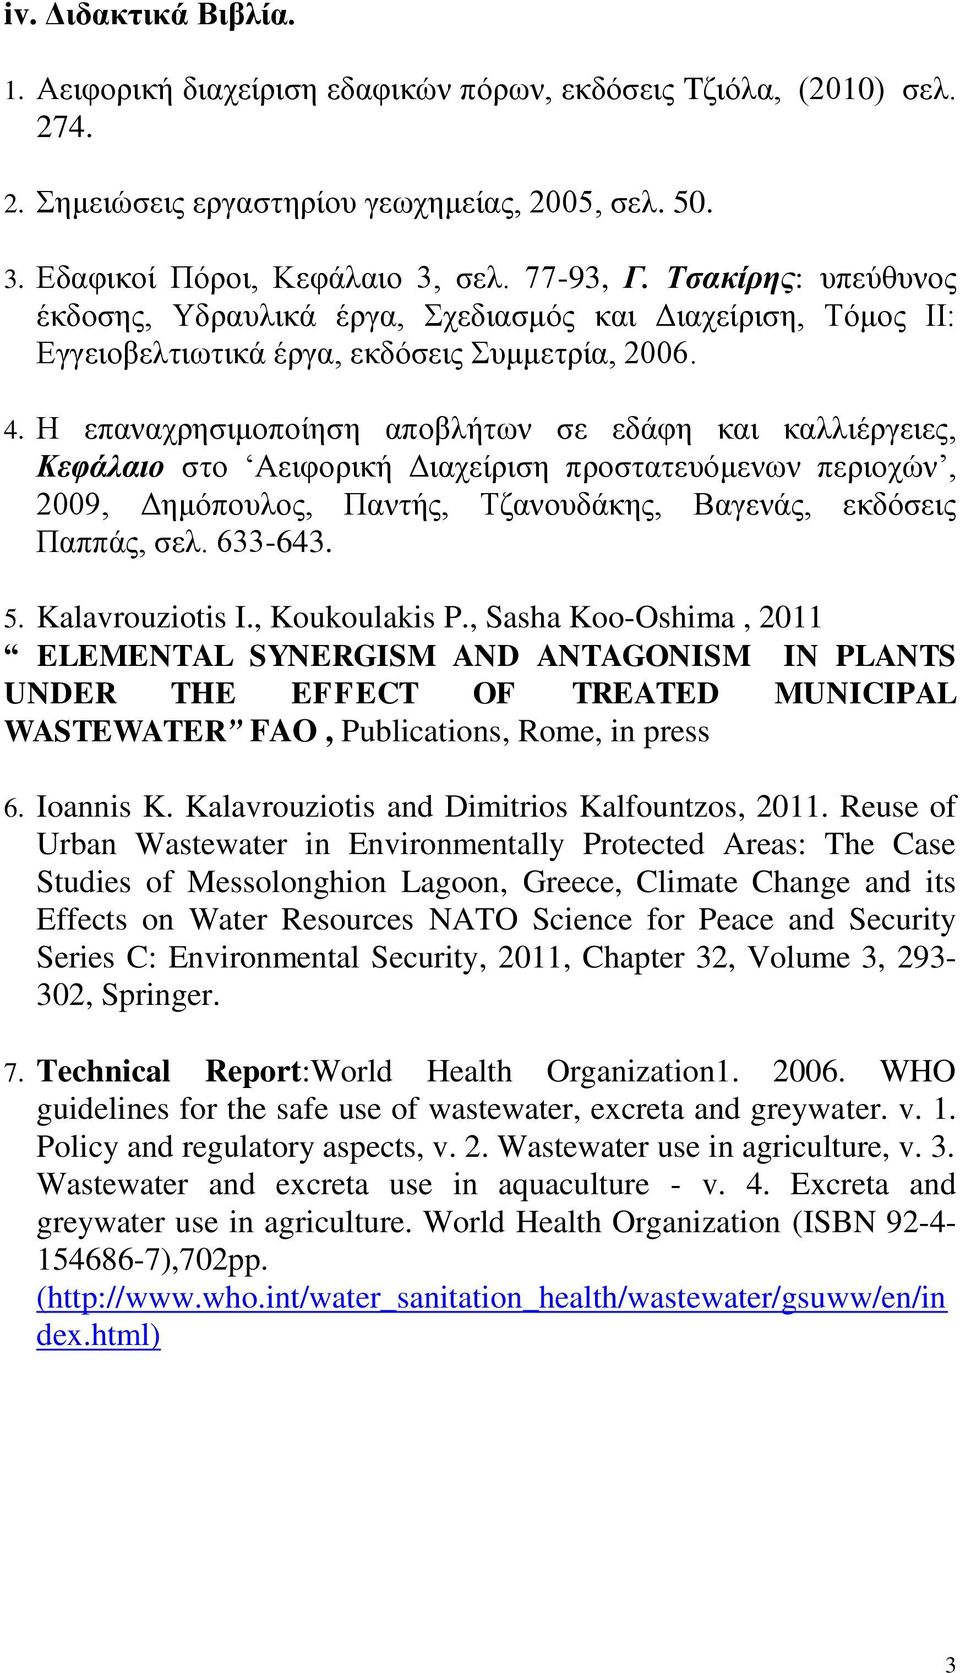 Η επαναχρησιμοποίηση αποβλήτων σε εδάφη και καλλιέργειες, Κεφάλαιο στο Αειφορική Διαχείριση προστατευόμενων περιοχών, 2009, Δημόπουλος, Παντής, Τζανουδάκης, Βαγενάς, εκδόσεις Παππάς, σελ. 633-643. 5.